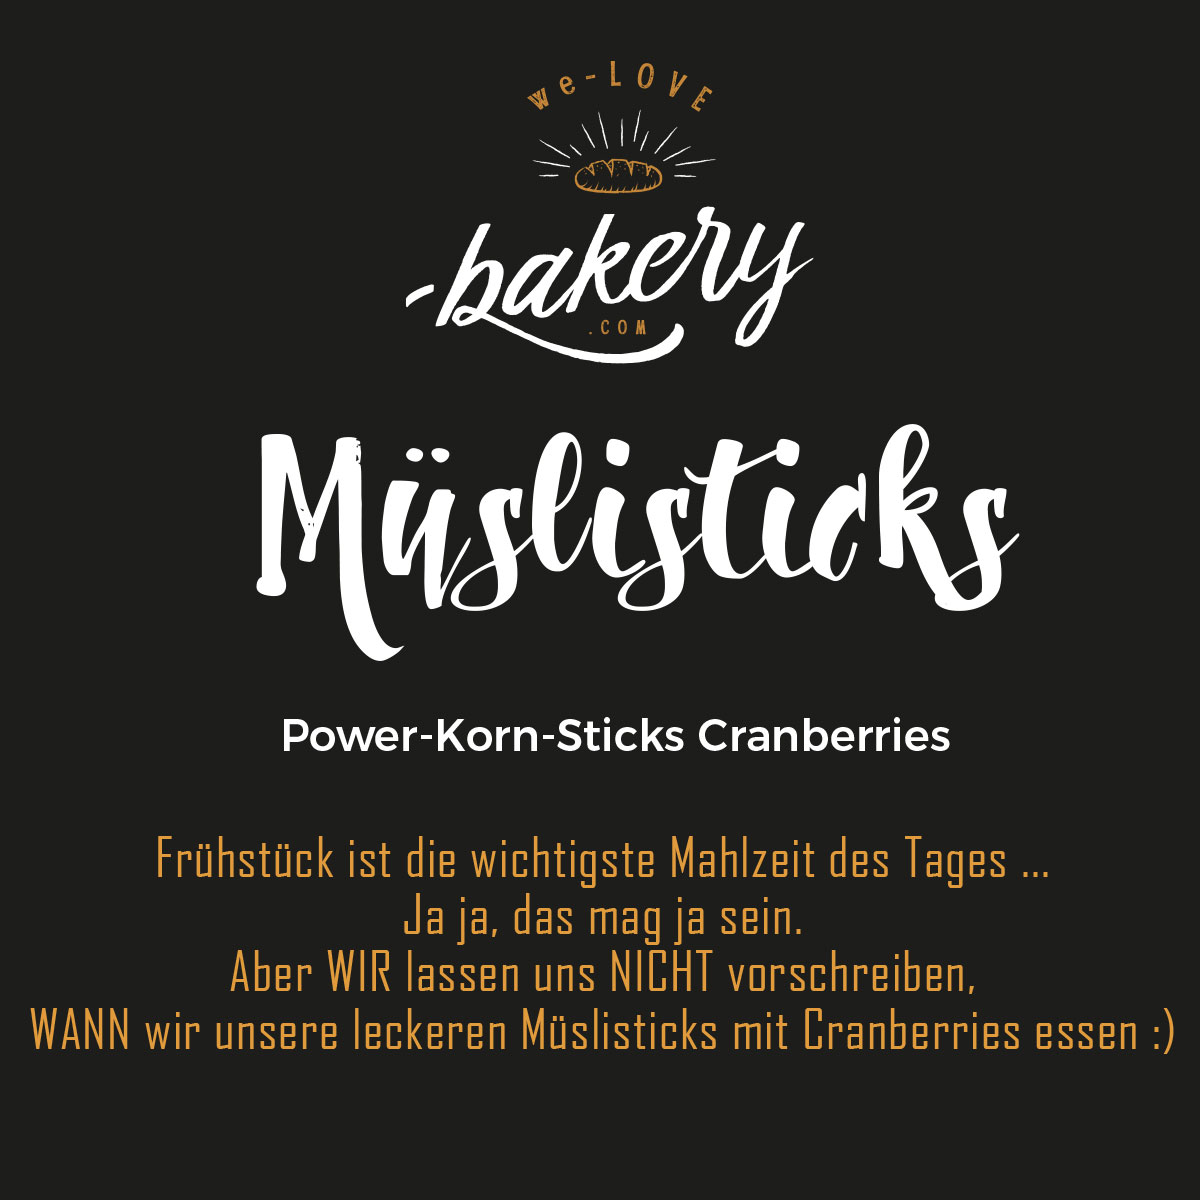 Power-Korn-Sticks mit Cranberries